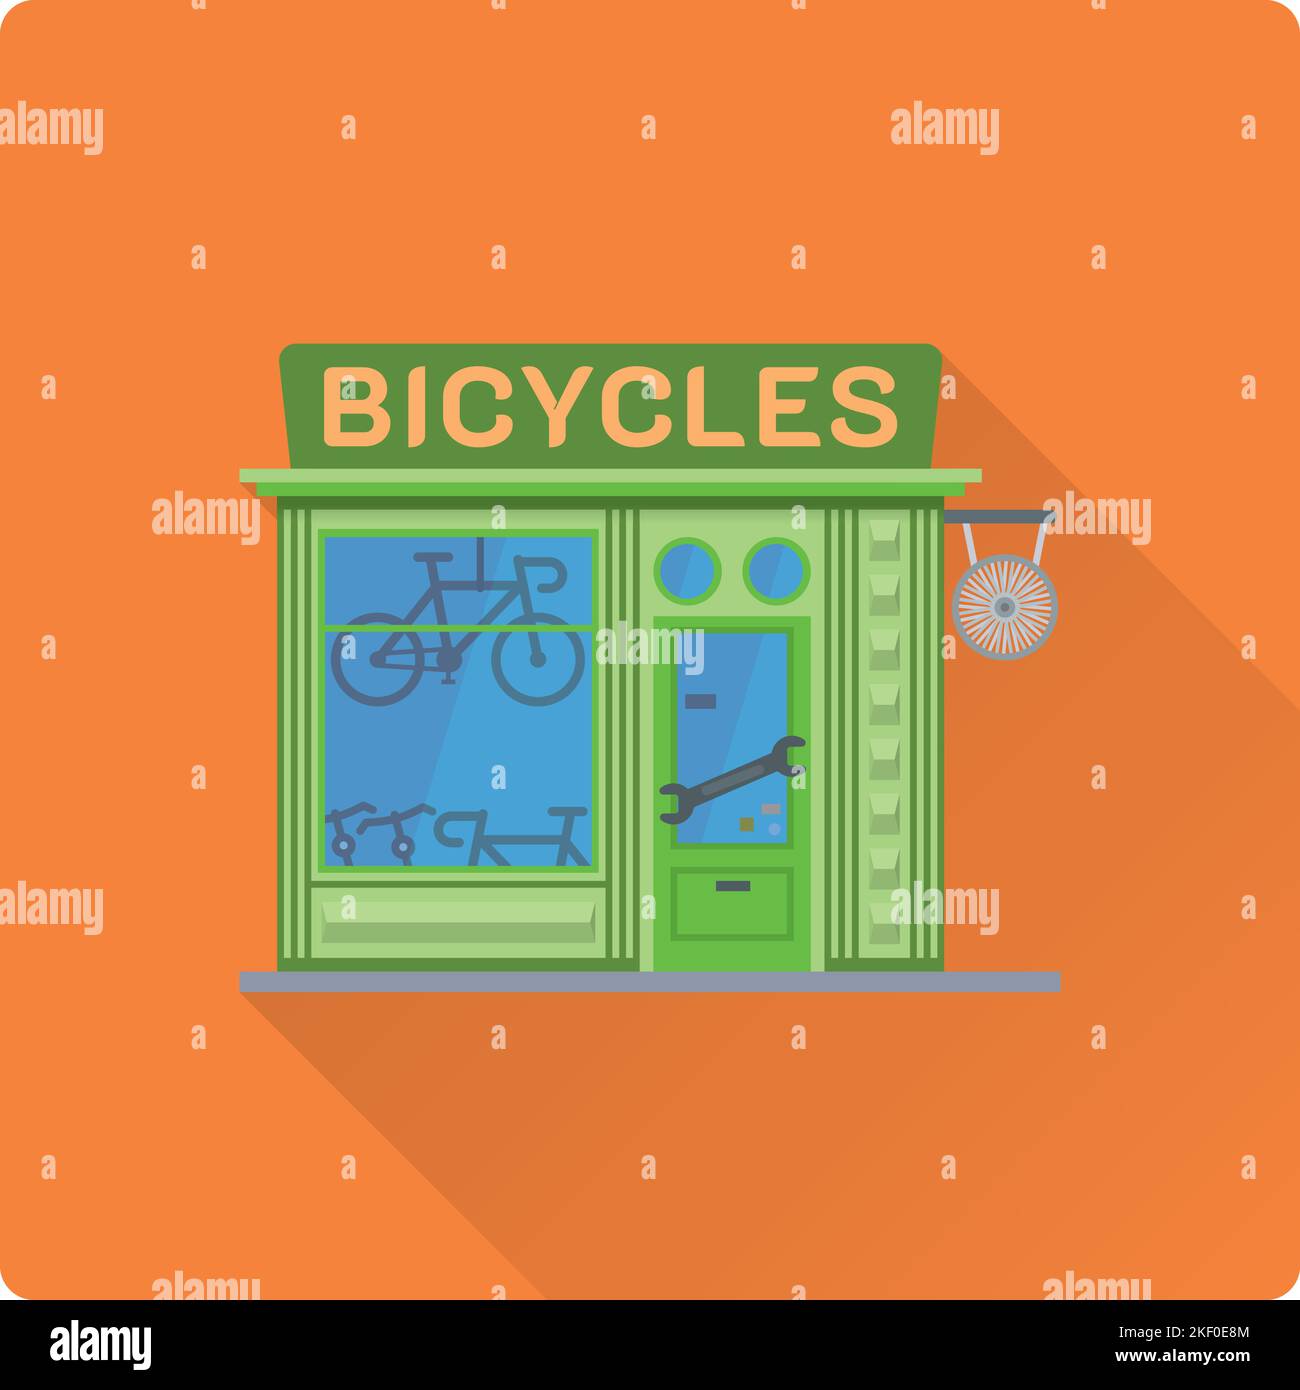 Negozio di biciclette a forma di lon shadow dal design piatto. Illustrazione carino del vettore della costruzione del deposito della bici Illustrazione Vettoriale